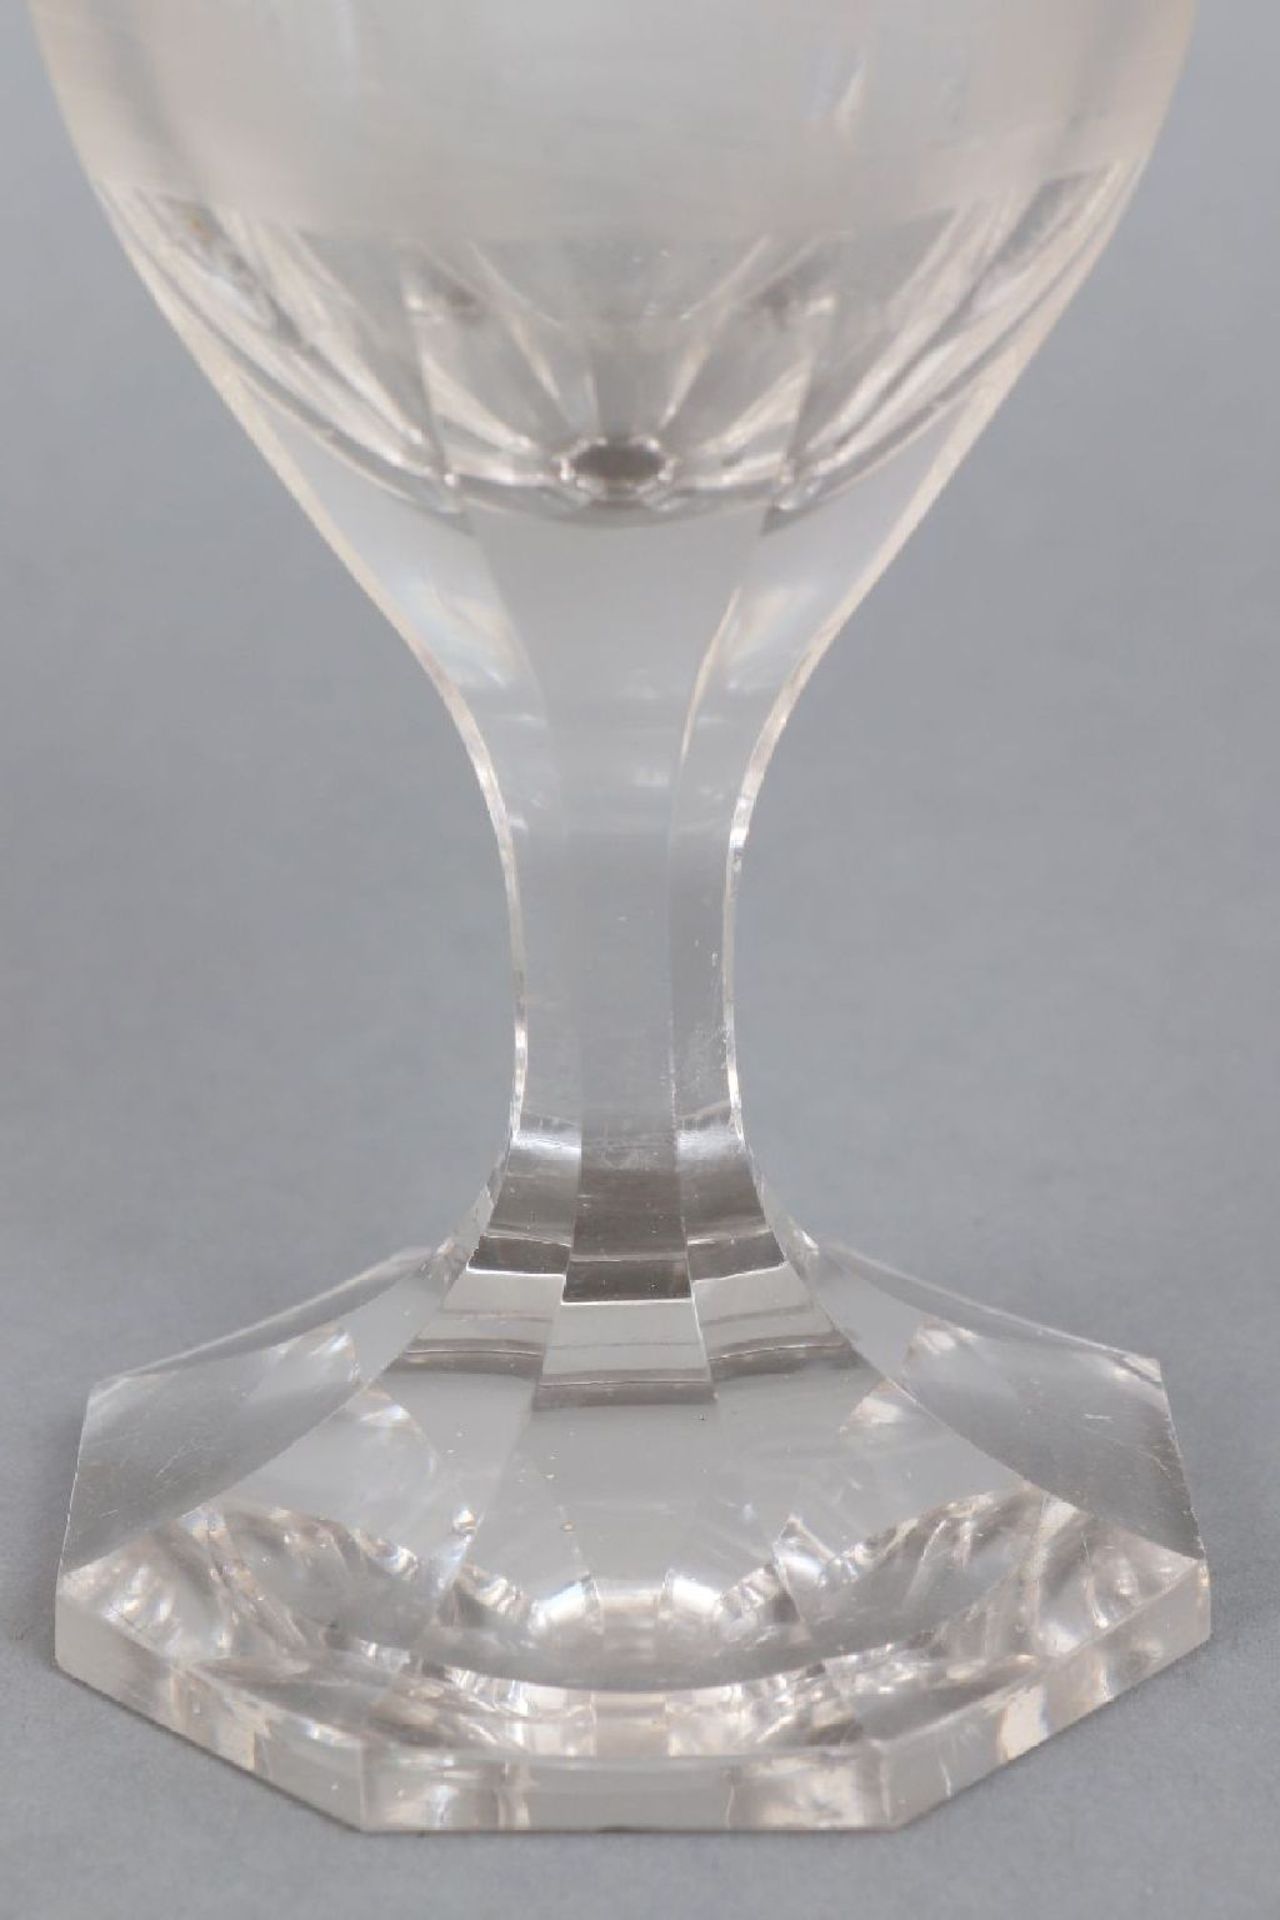 Pokalglas mit Bäderschliff, Böhmen 19. Jahrhundert - Bild 3 aus 4